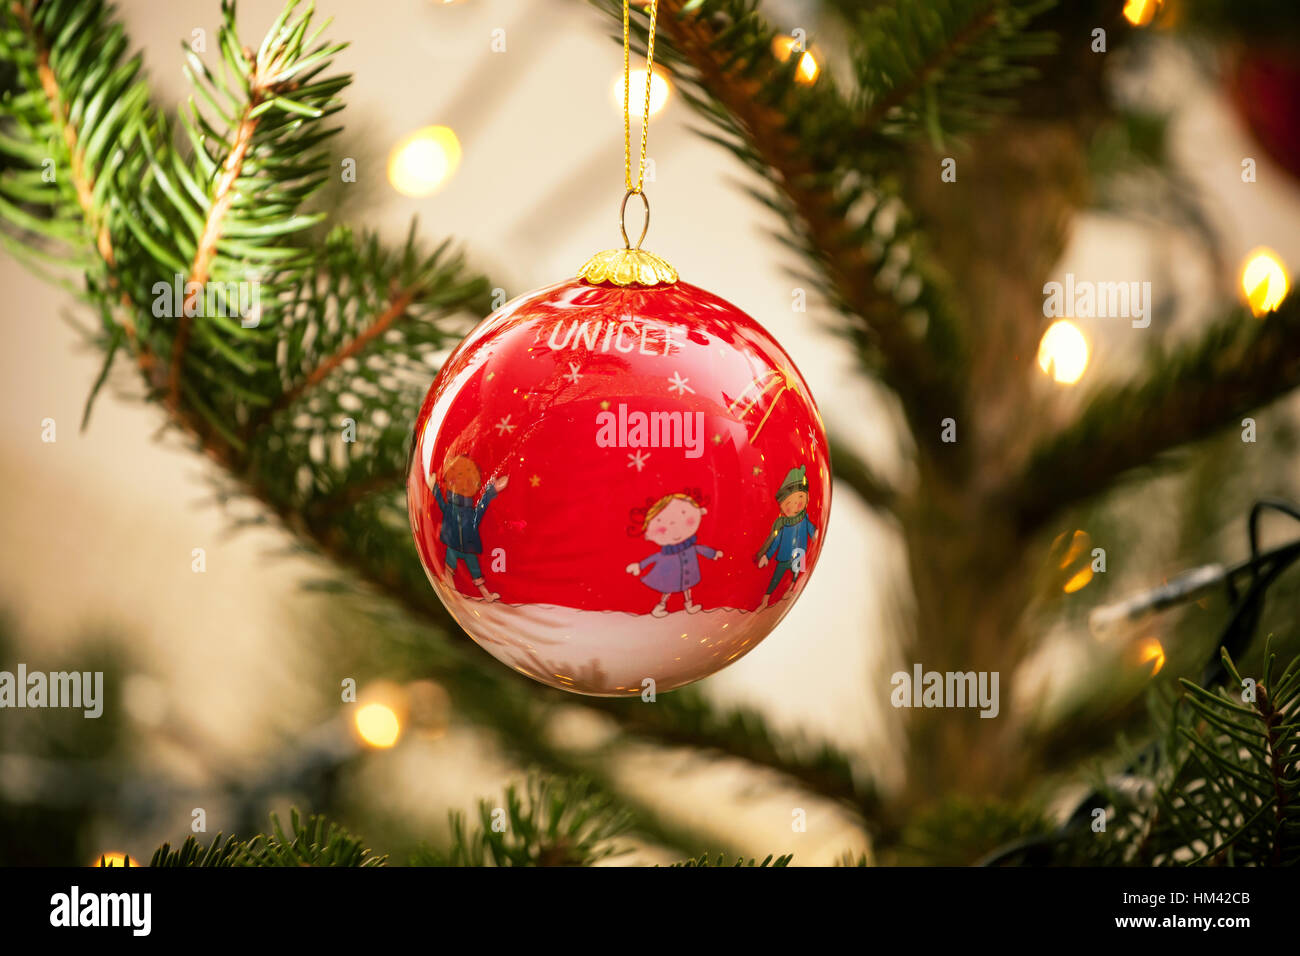 Empoli, Italia - 21 dicembre 2016: Unicef sfera su christams tree. Il mercato di ornamento UNICEF aiuta i bambini più vulnerabili del mondo. Ogni gif Foto Stock